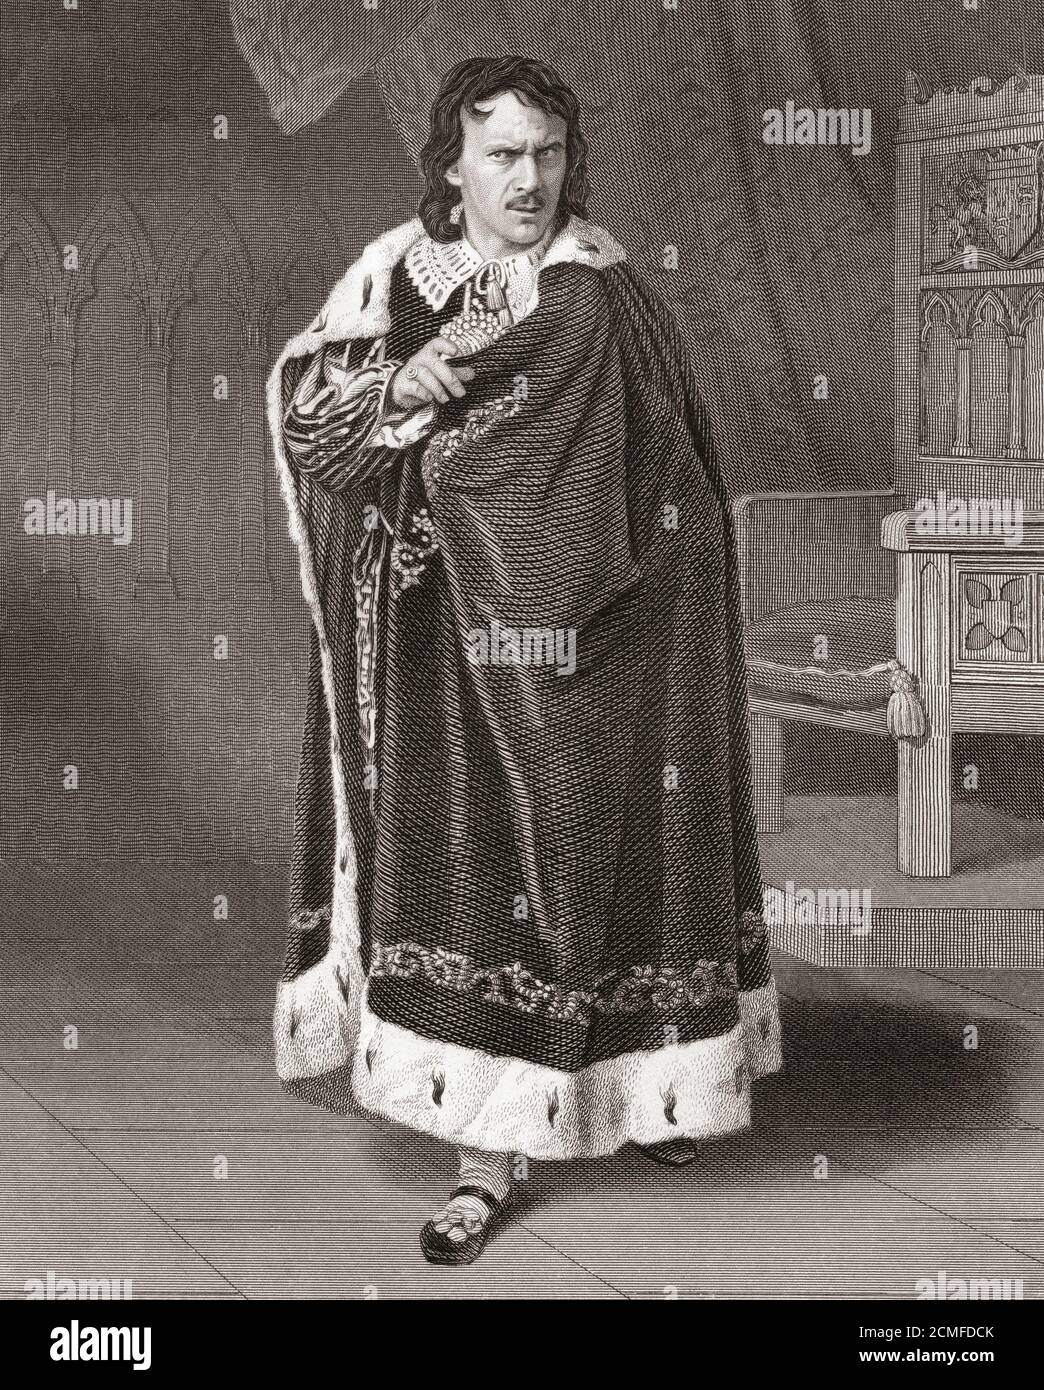 M. Couldock dans le rôle de Richard III de la pièce de Shakespeare. Charles Walter Couldock, 1815 – 1898. Acteur anglais du XIXe siècle Banque D'Images